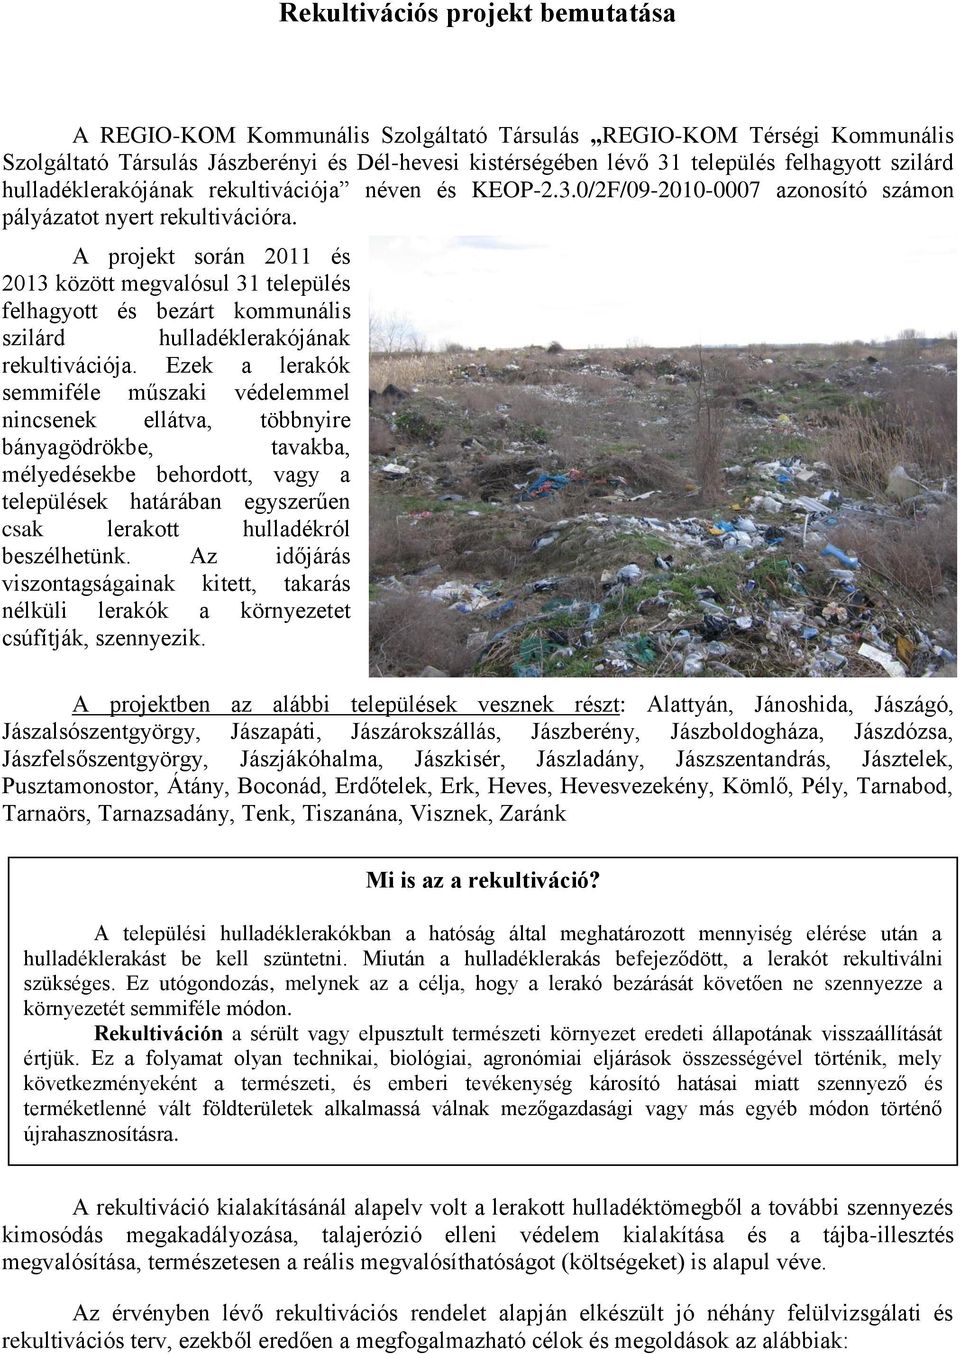 A projekt során 2011 és 2013 között megvalósul 31 település felhagyott és bezárt kommunális szilárd hulladéklerakójának rekultivációja.